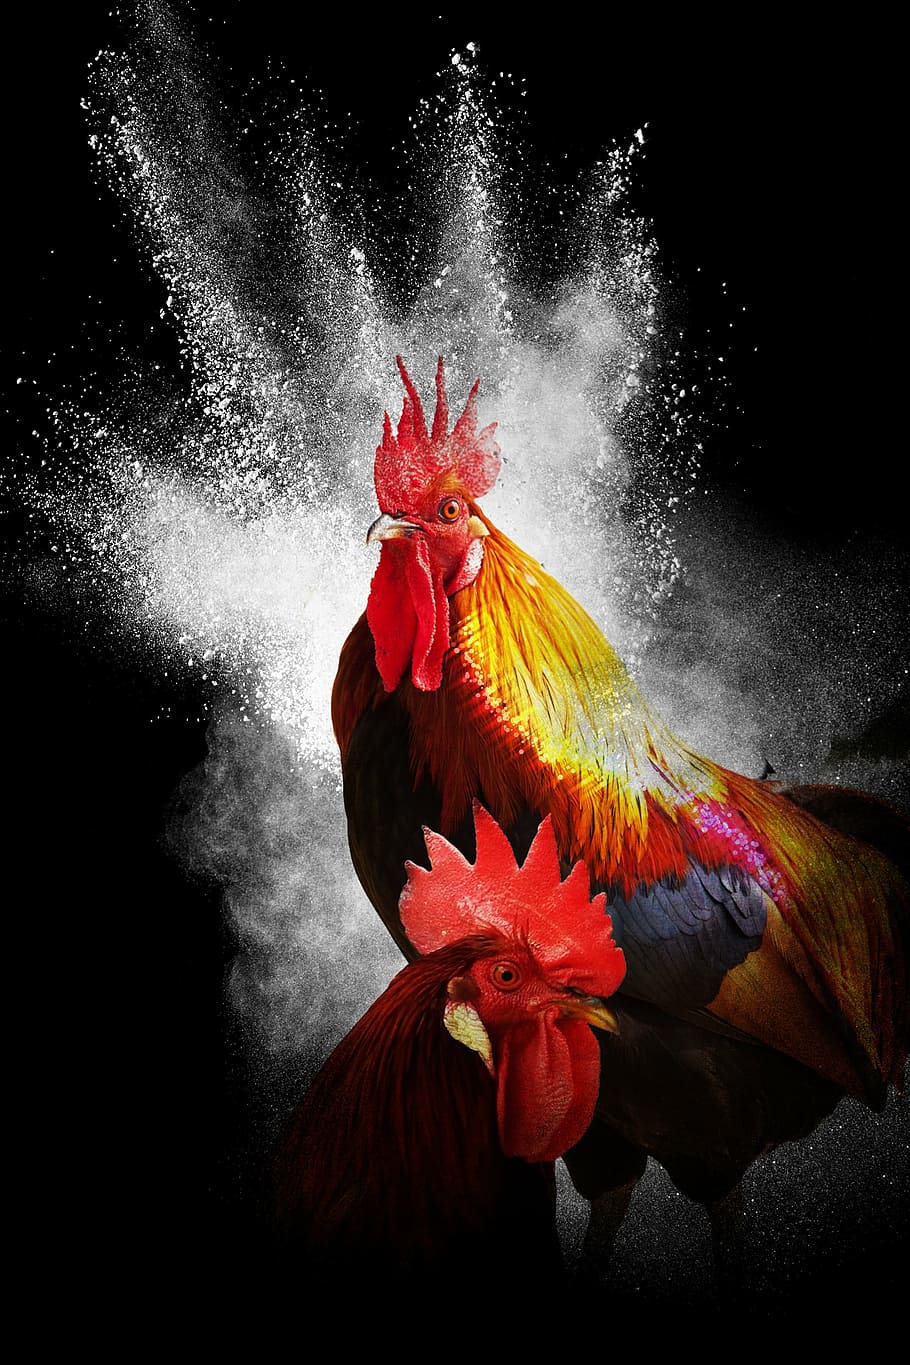 dos, naranja, rojo, gallos de caza, gallo, año del gallo, fondo negro, collage, photoshop, pájaro